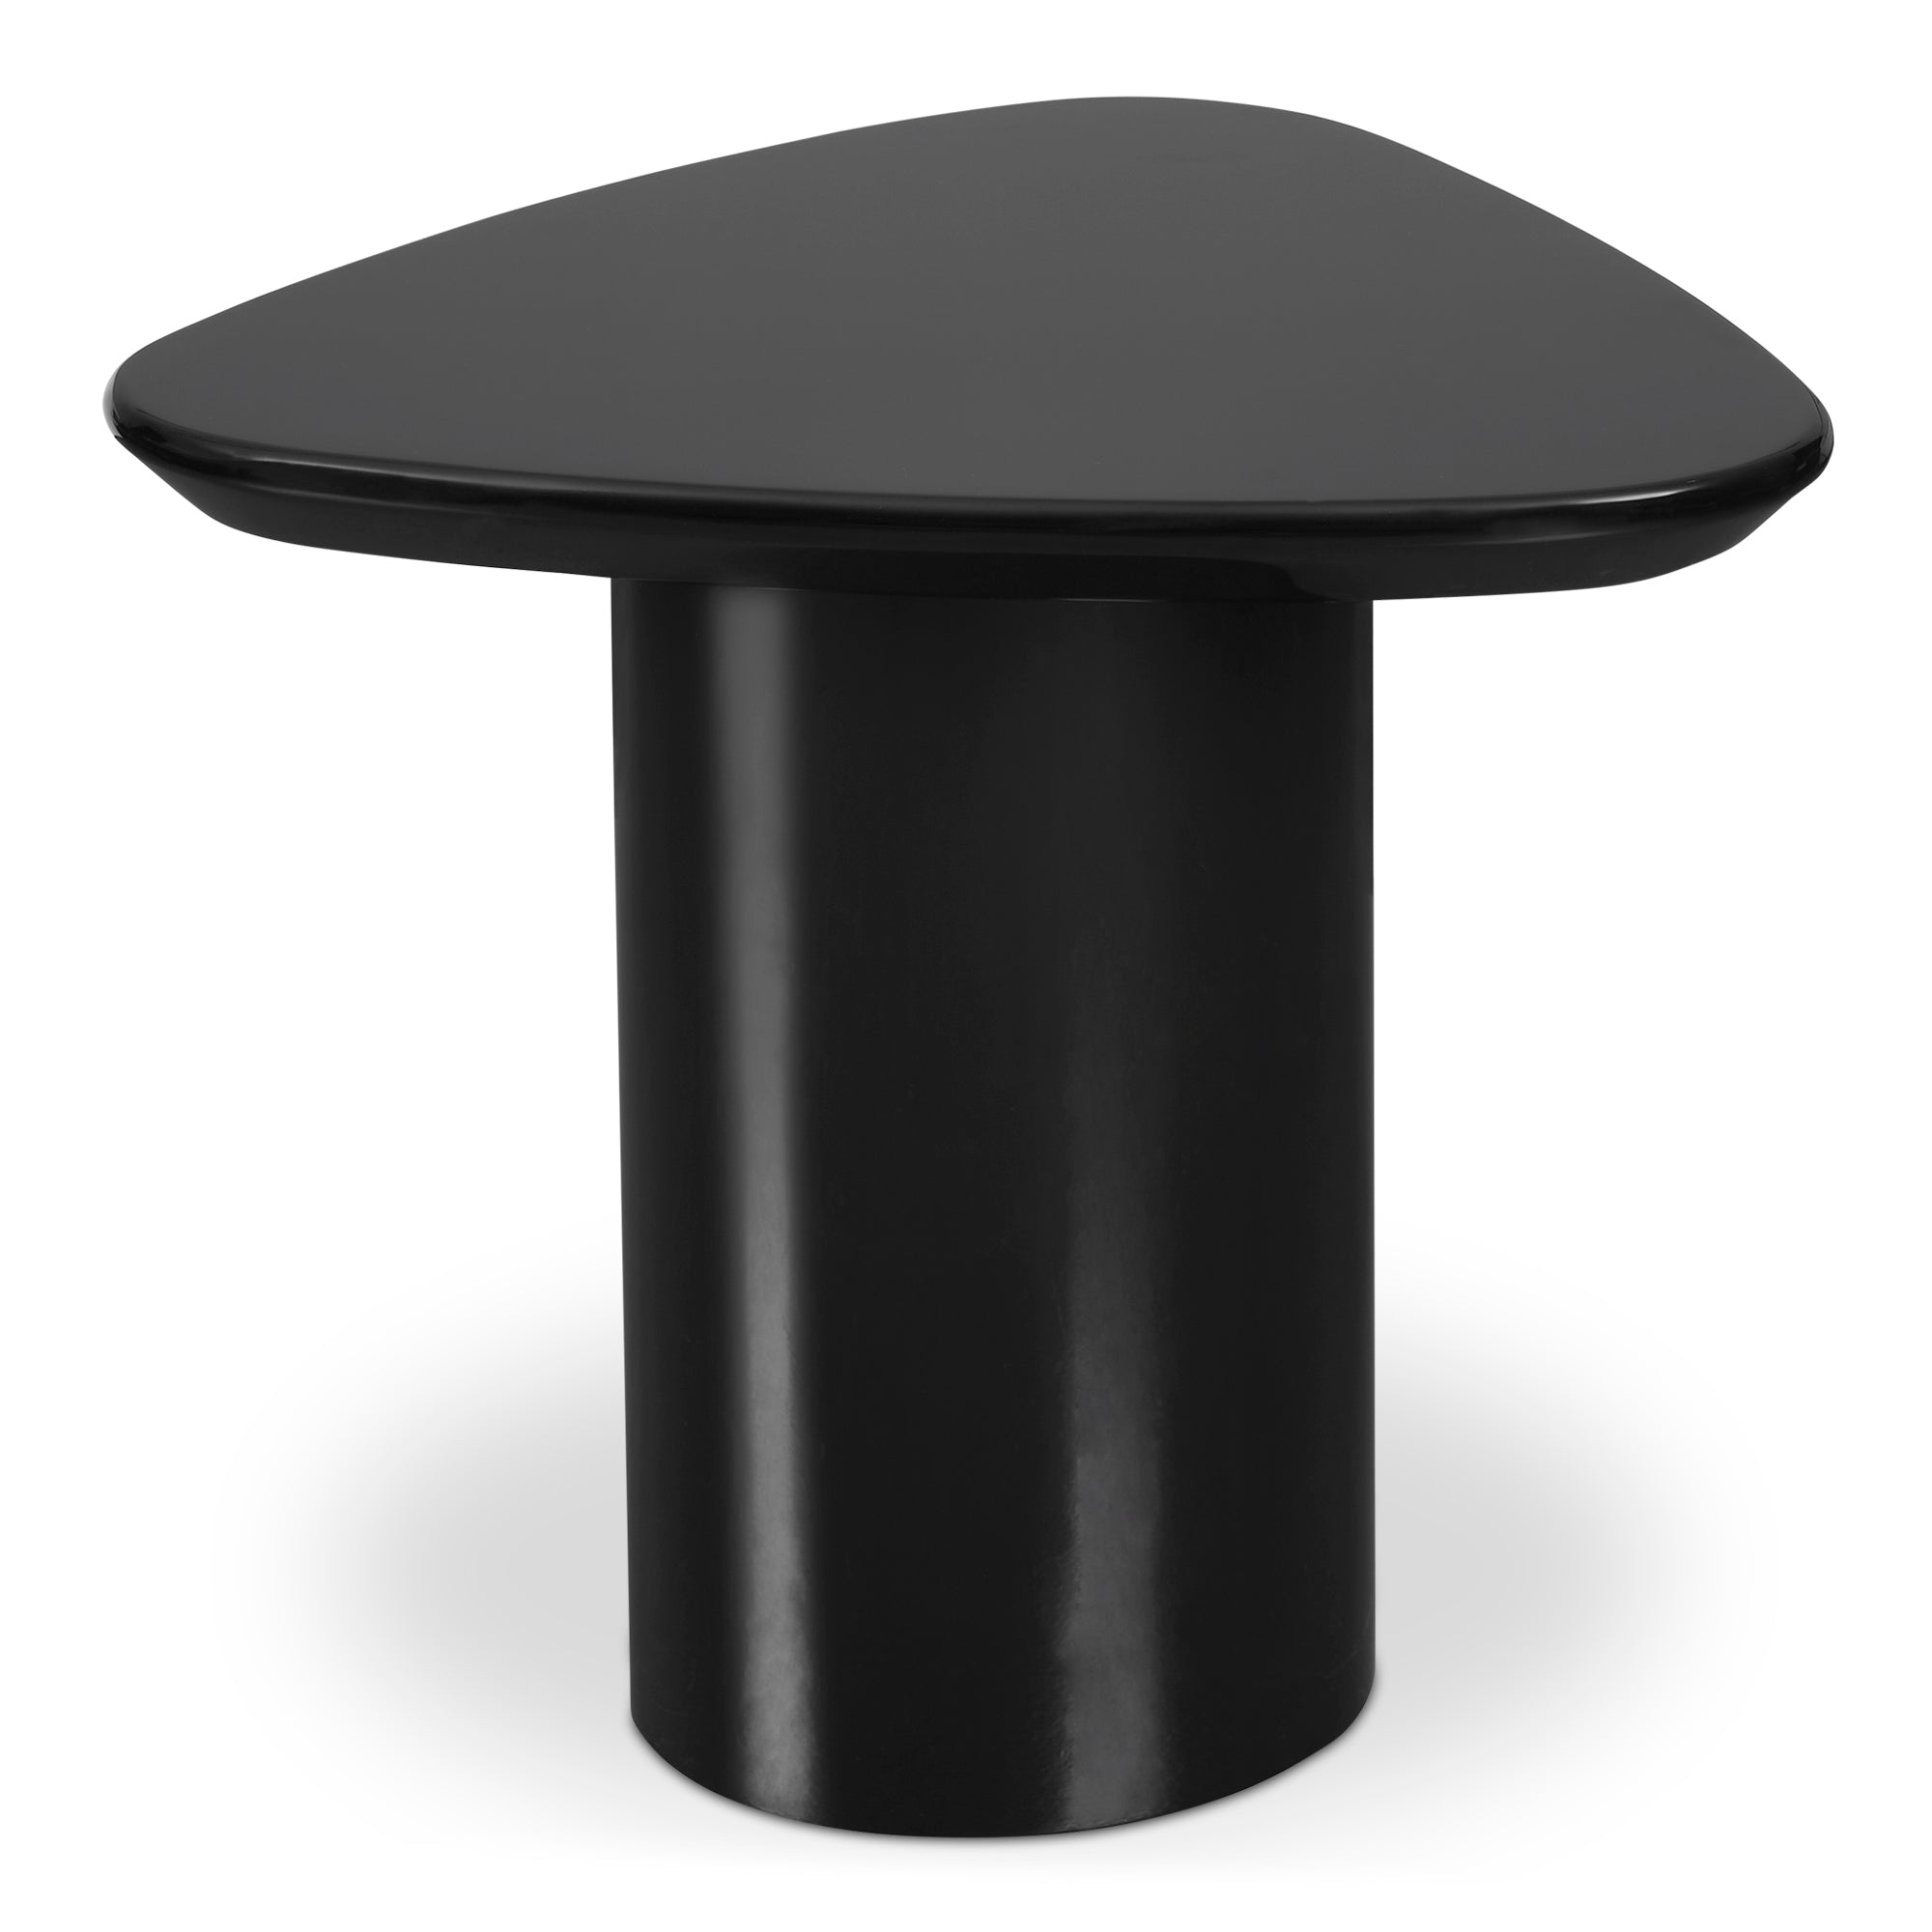 Edem Accentt Table Black Lacquer | Black